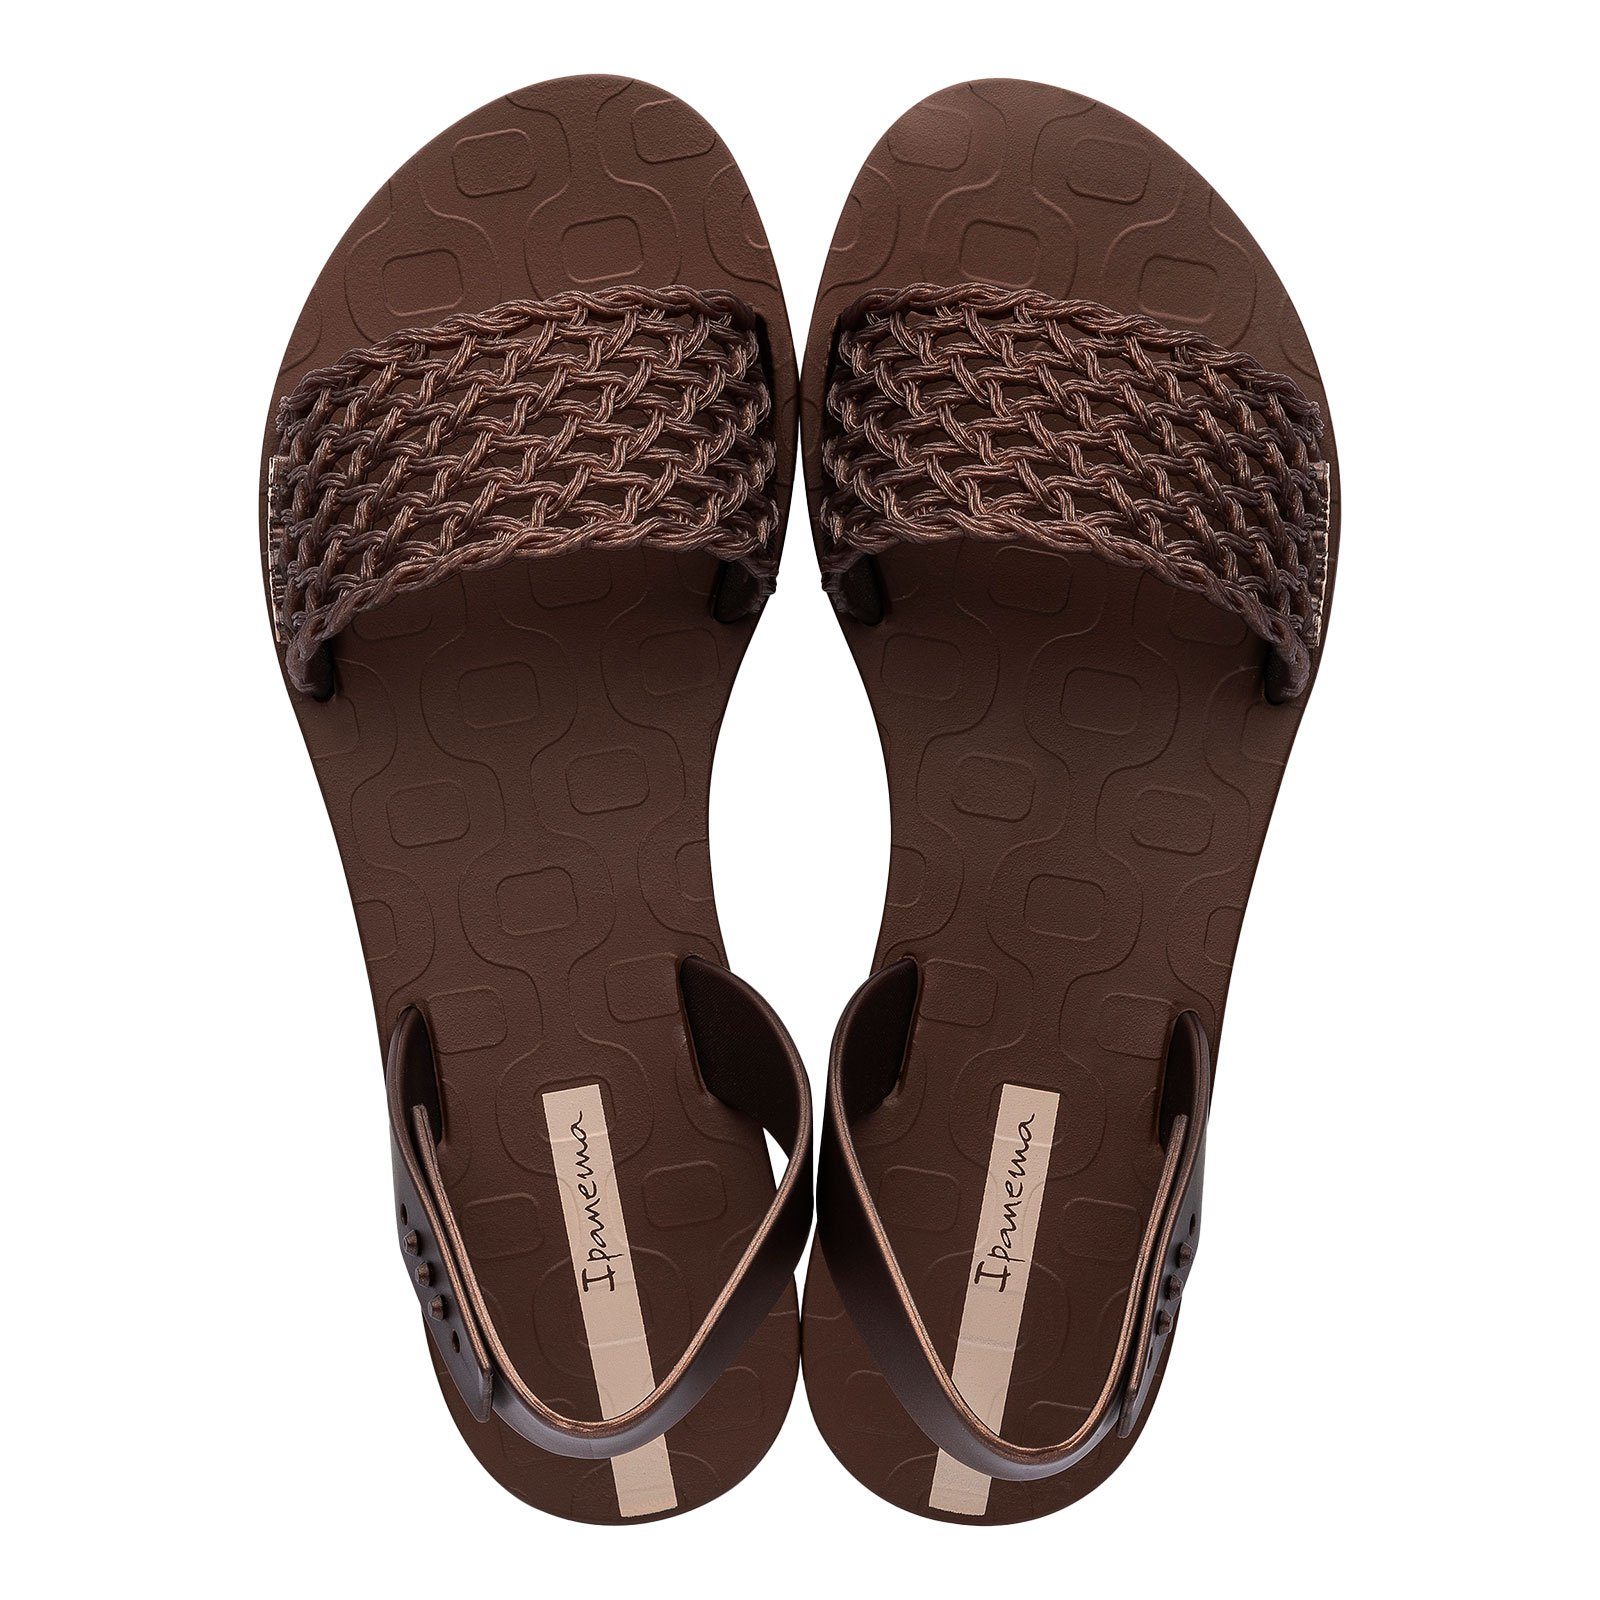 Ipanema Breezy Sandal Sandale mit Markenschriftzug auf der Innensohle AJ031 brown / bronze | Riemchensandalen